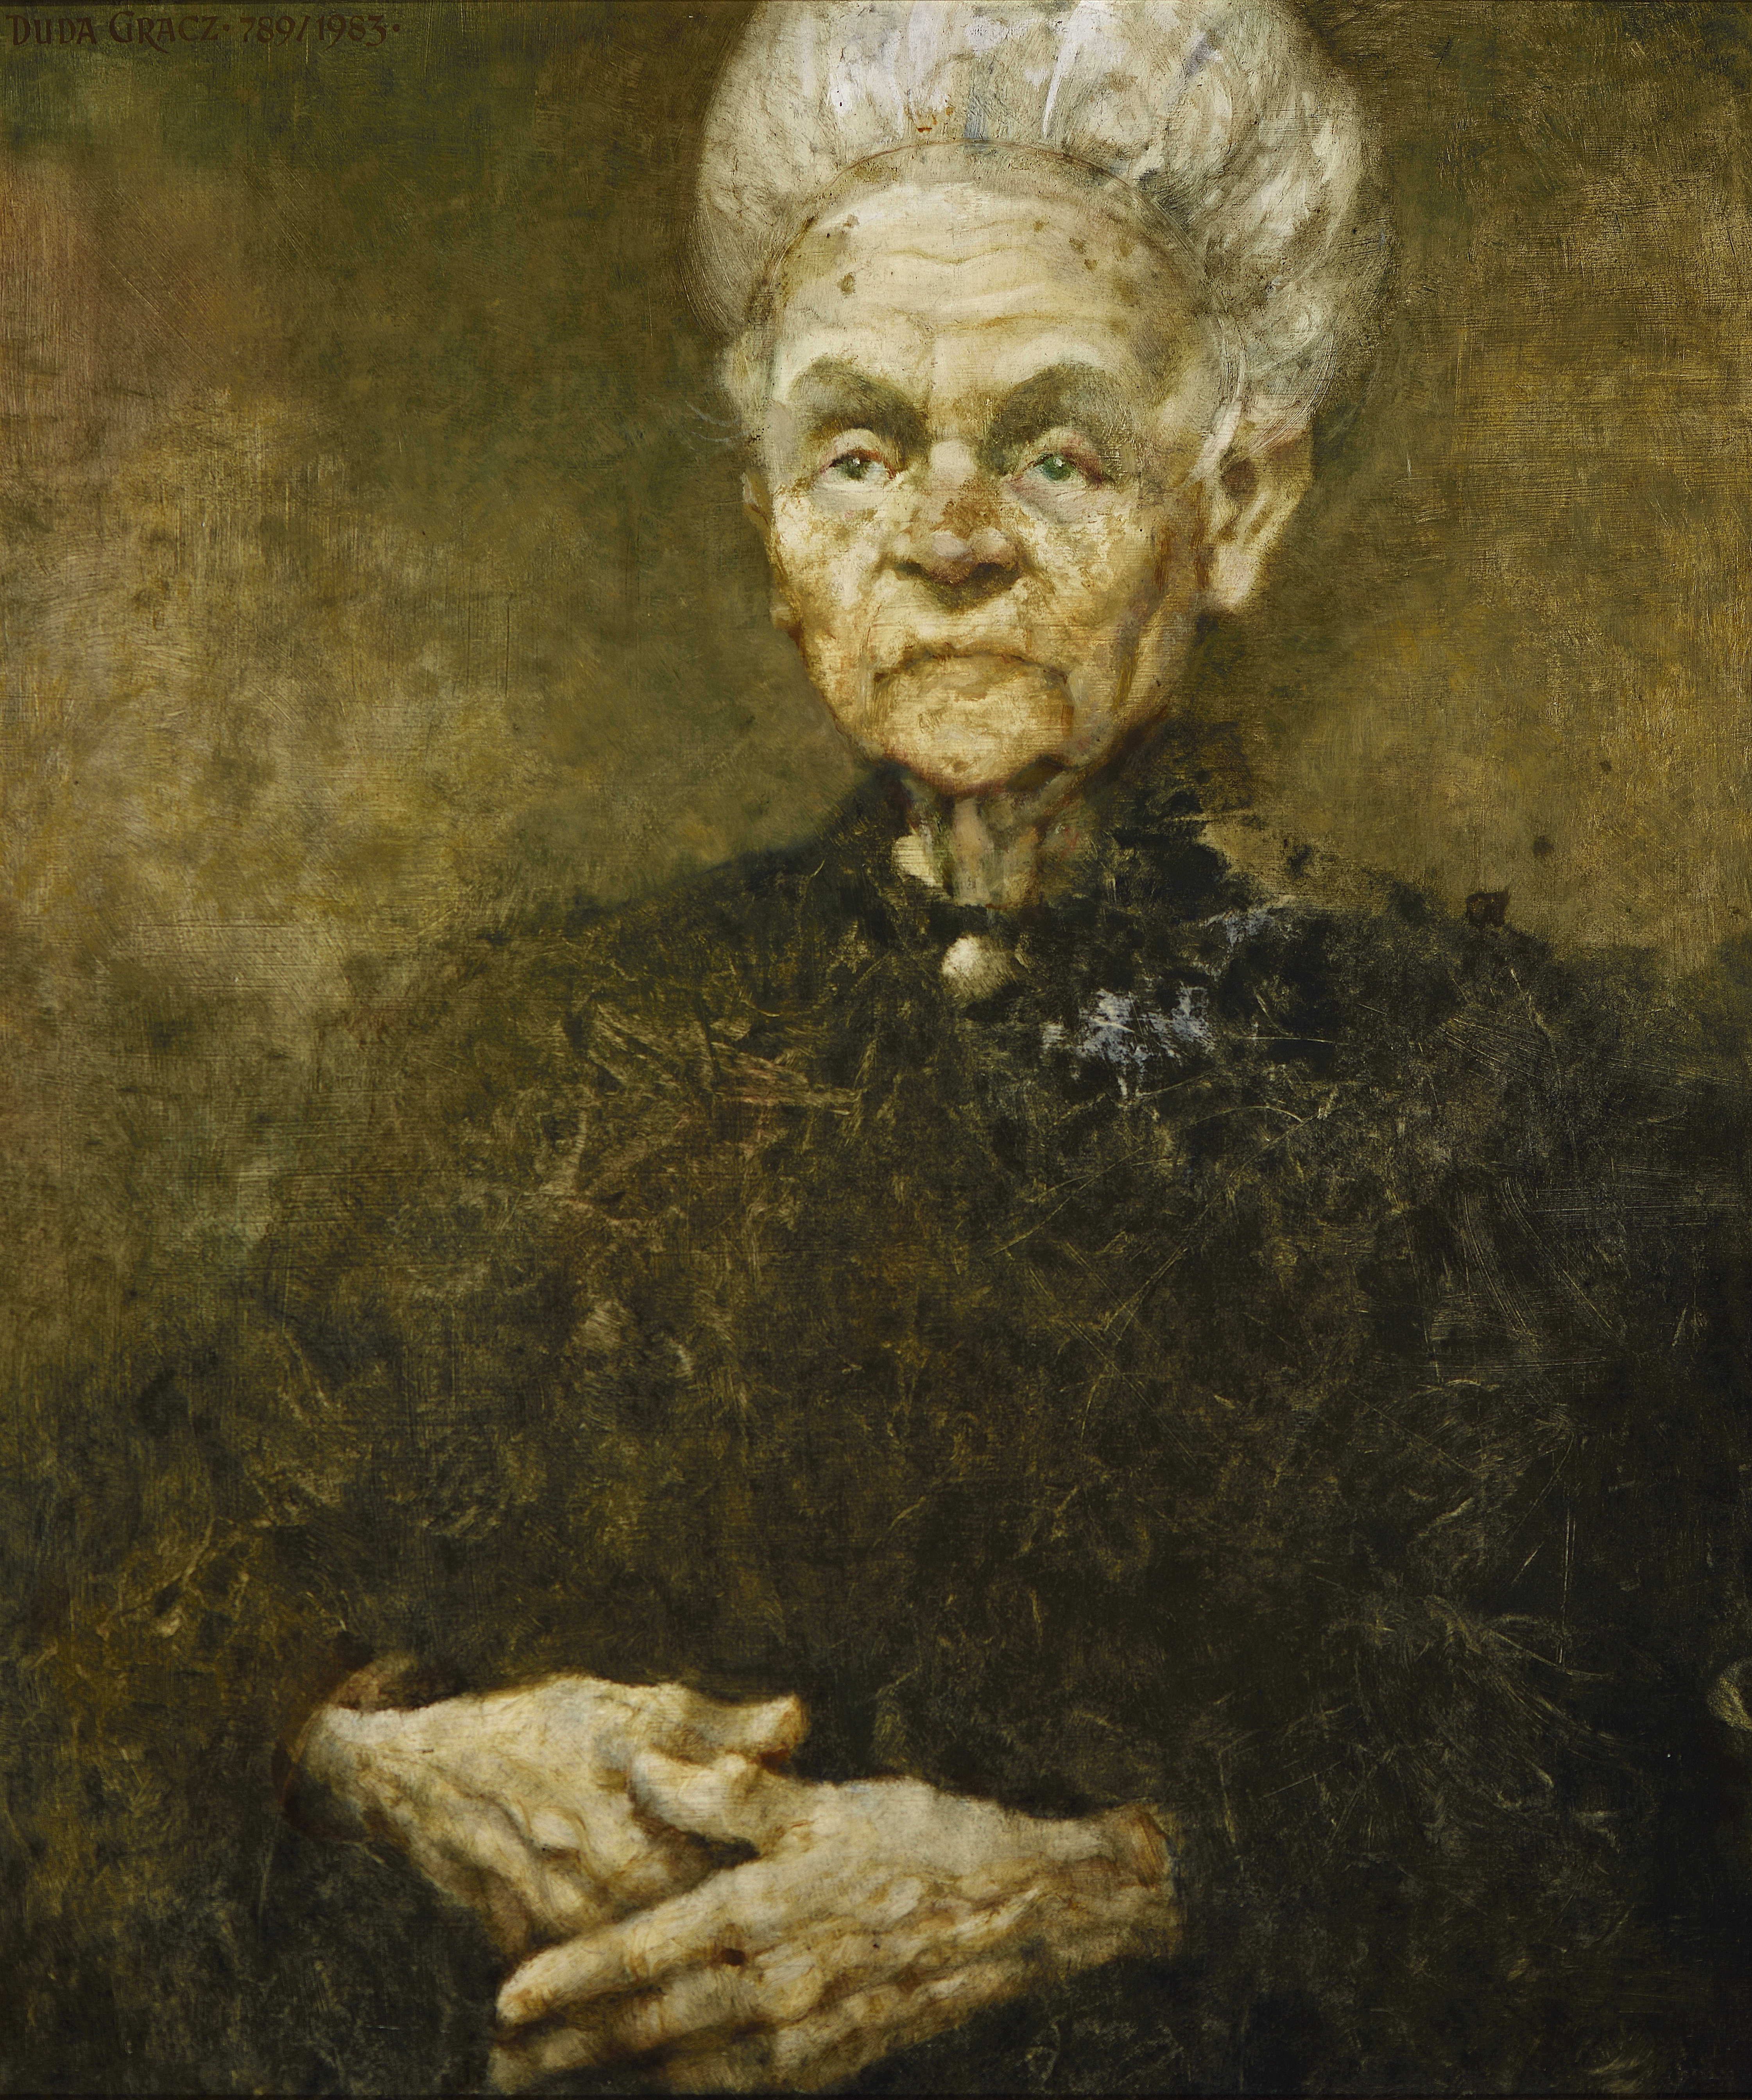 Portret matki / Portrait of Mother, 1983, olej na płycie pilśniowej / oil on fibreboard, 50 × 59,5 cm